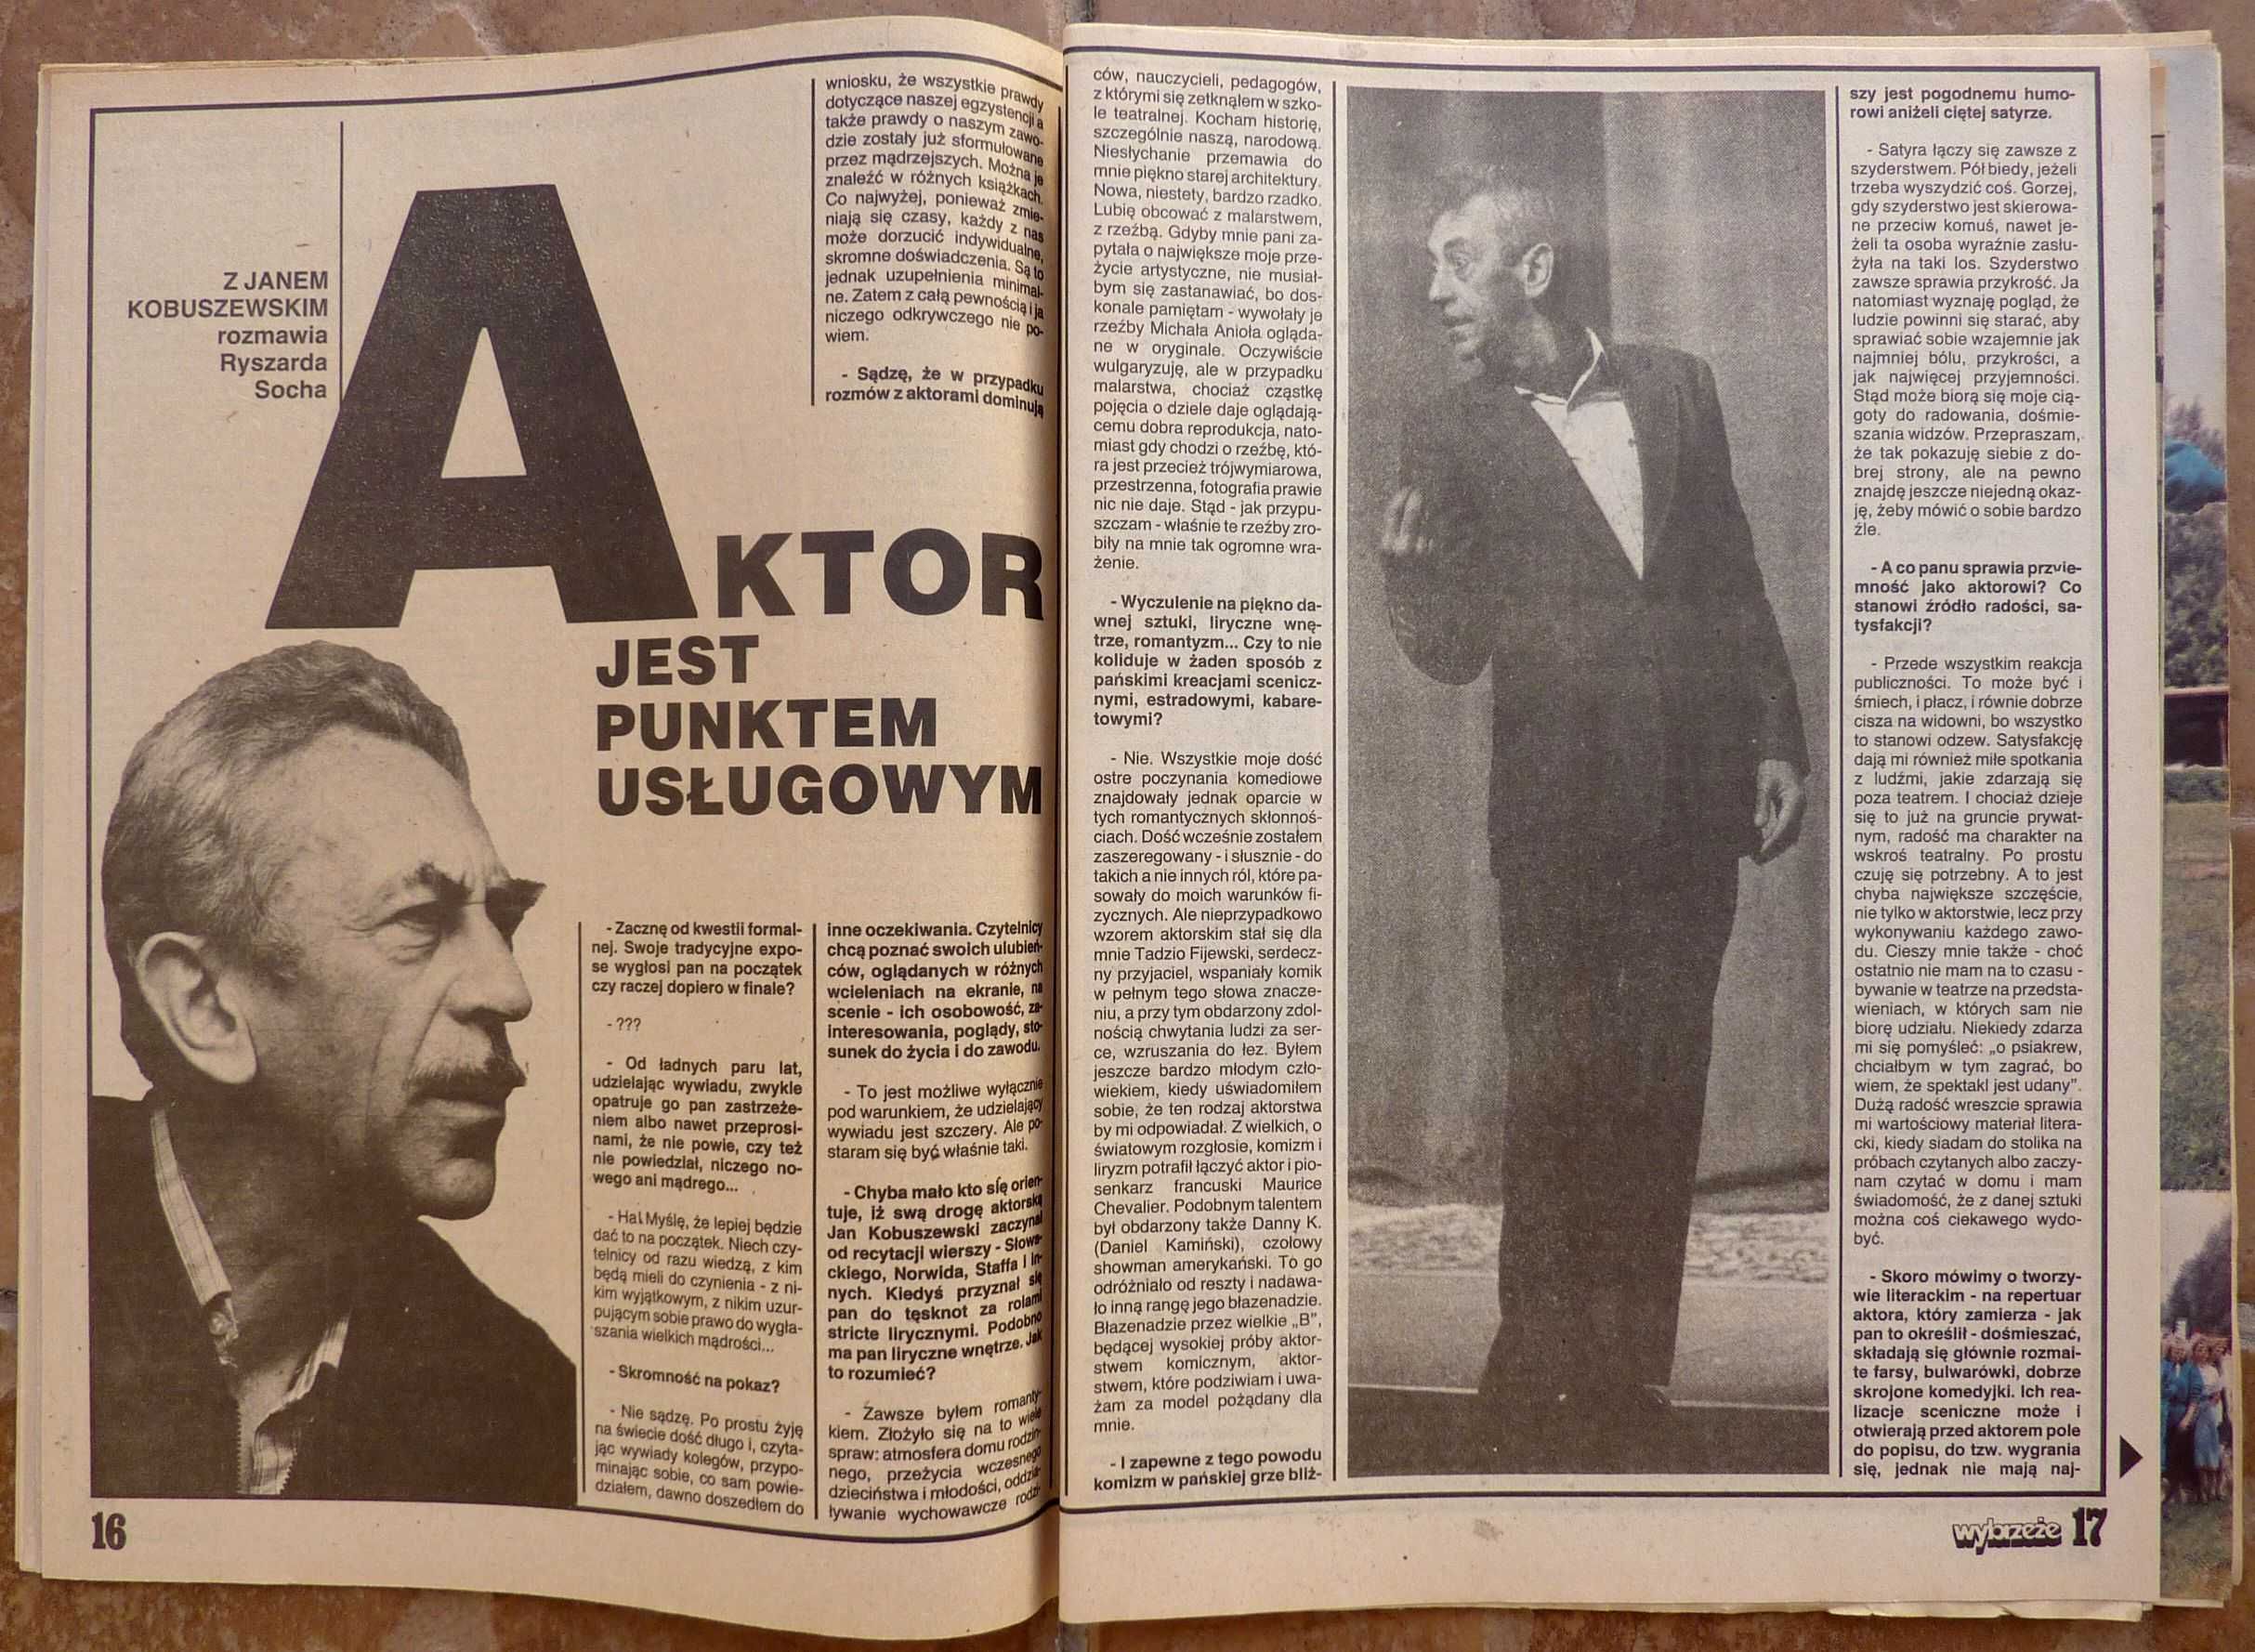 WYBRZEŻE tygodnik nr 27/1988 - wywiad - JAN KOBUSZEWSKI